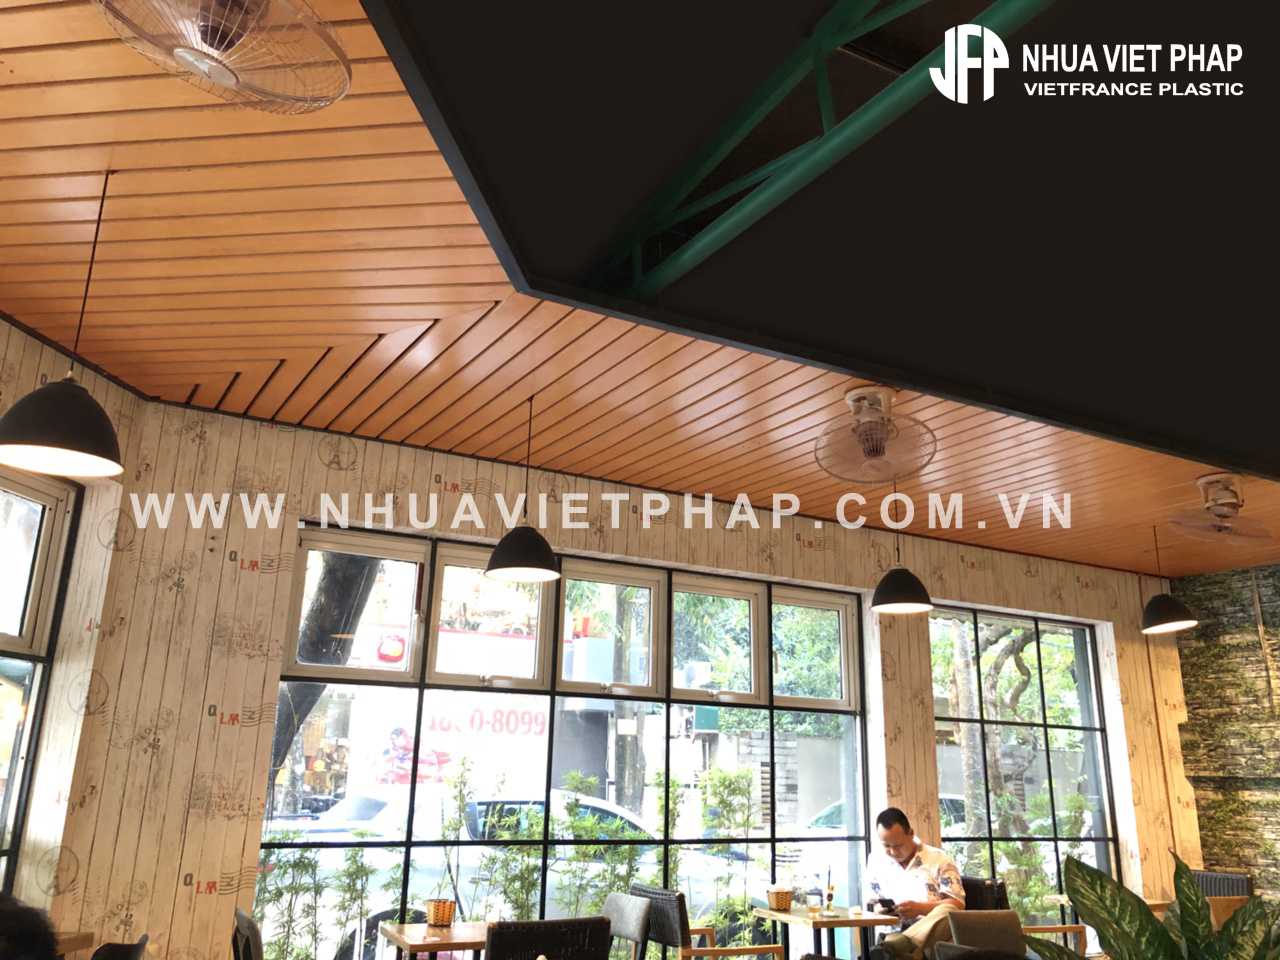 Trang trí trần nhà bằng gỗ nhựa Việt Pháp